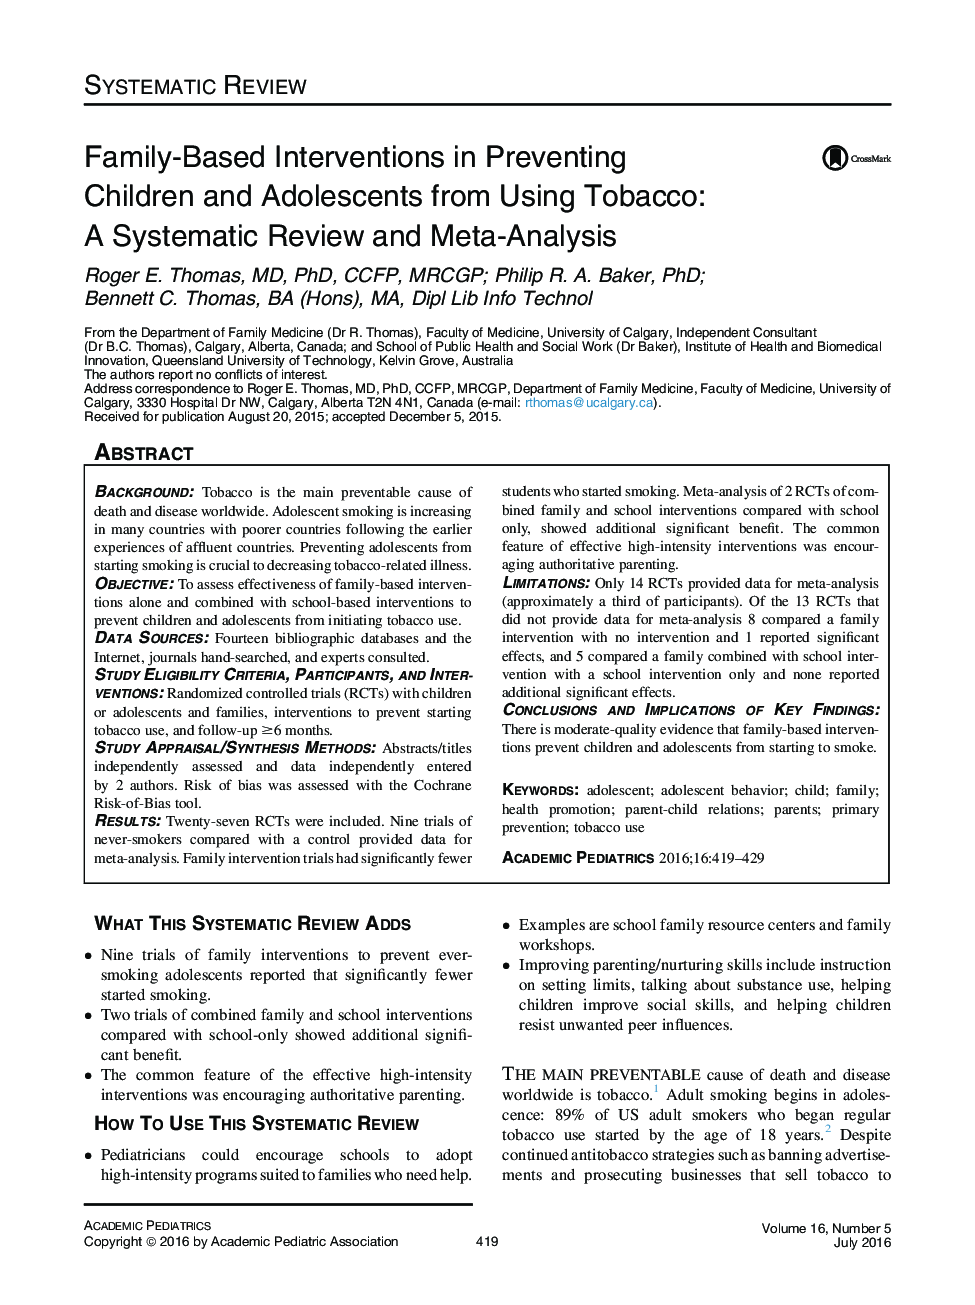 مداخلات خانوادگی در پیشگیری از کودکان و نوجوانان در استفاده از توتون و تنباکو: بررسی منظم و متاآنالیز